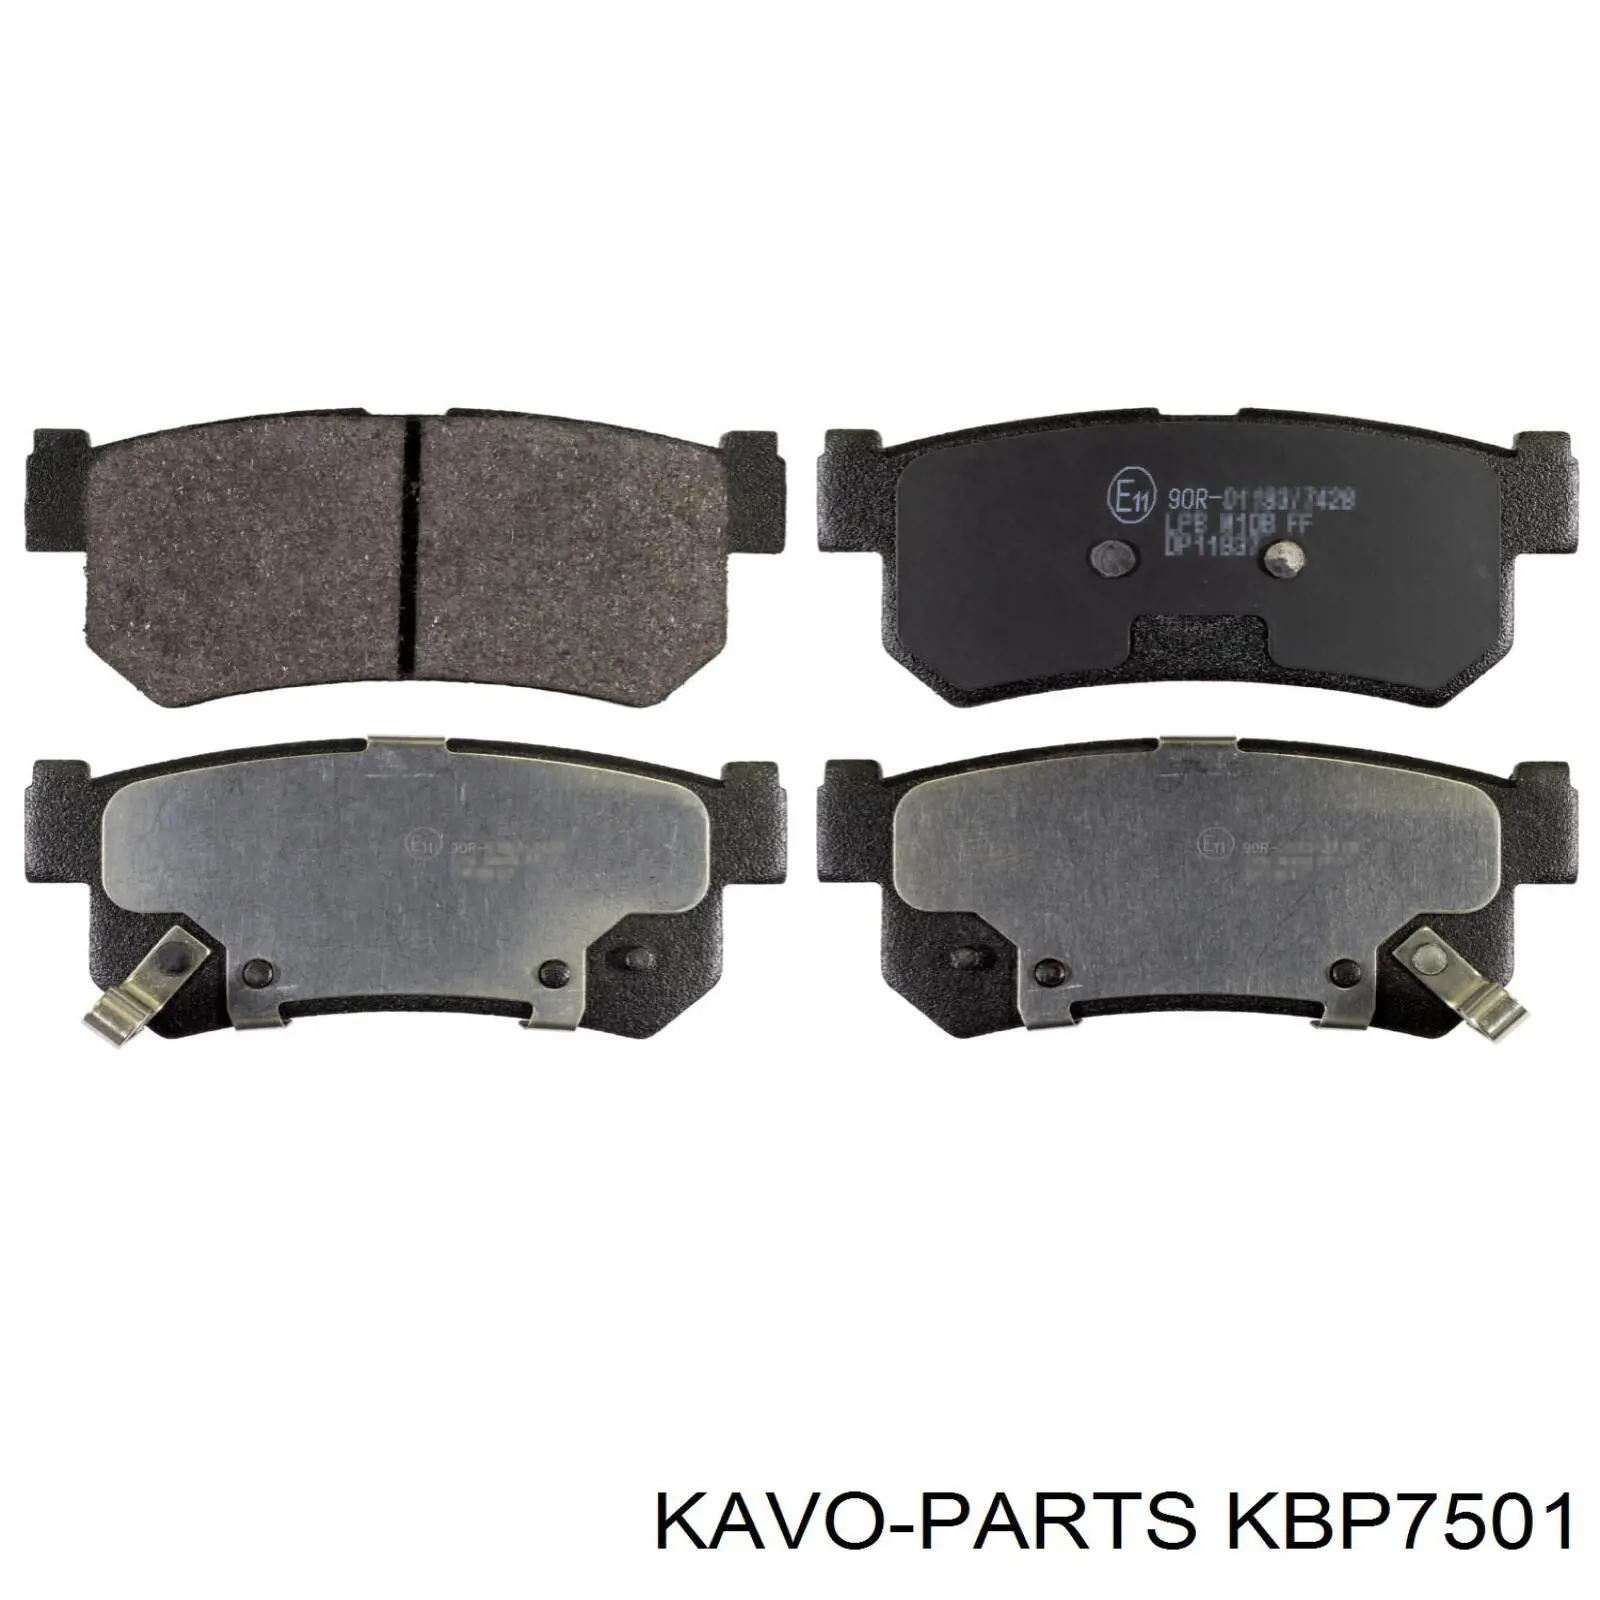 KBP-7501 Kavo Parts pastillas de freno traseras